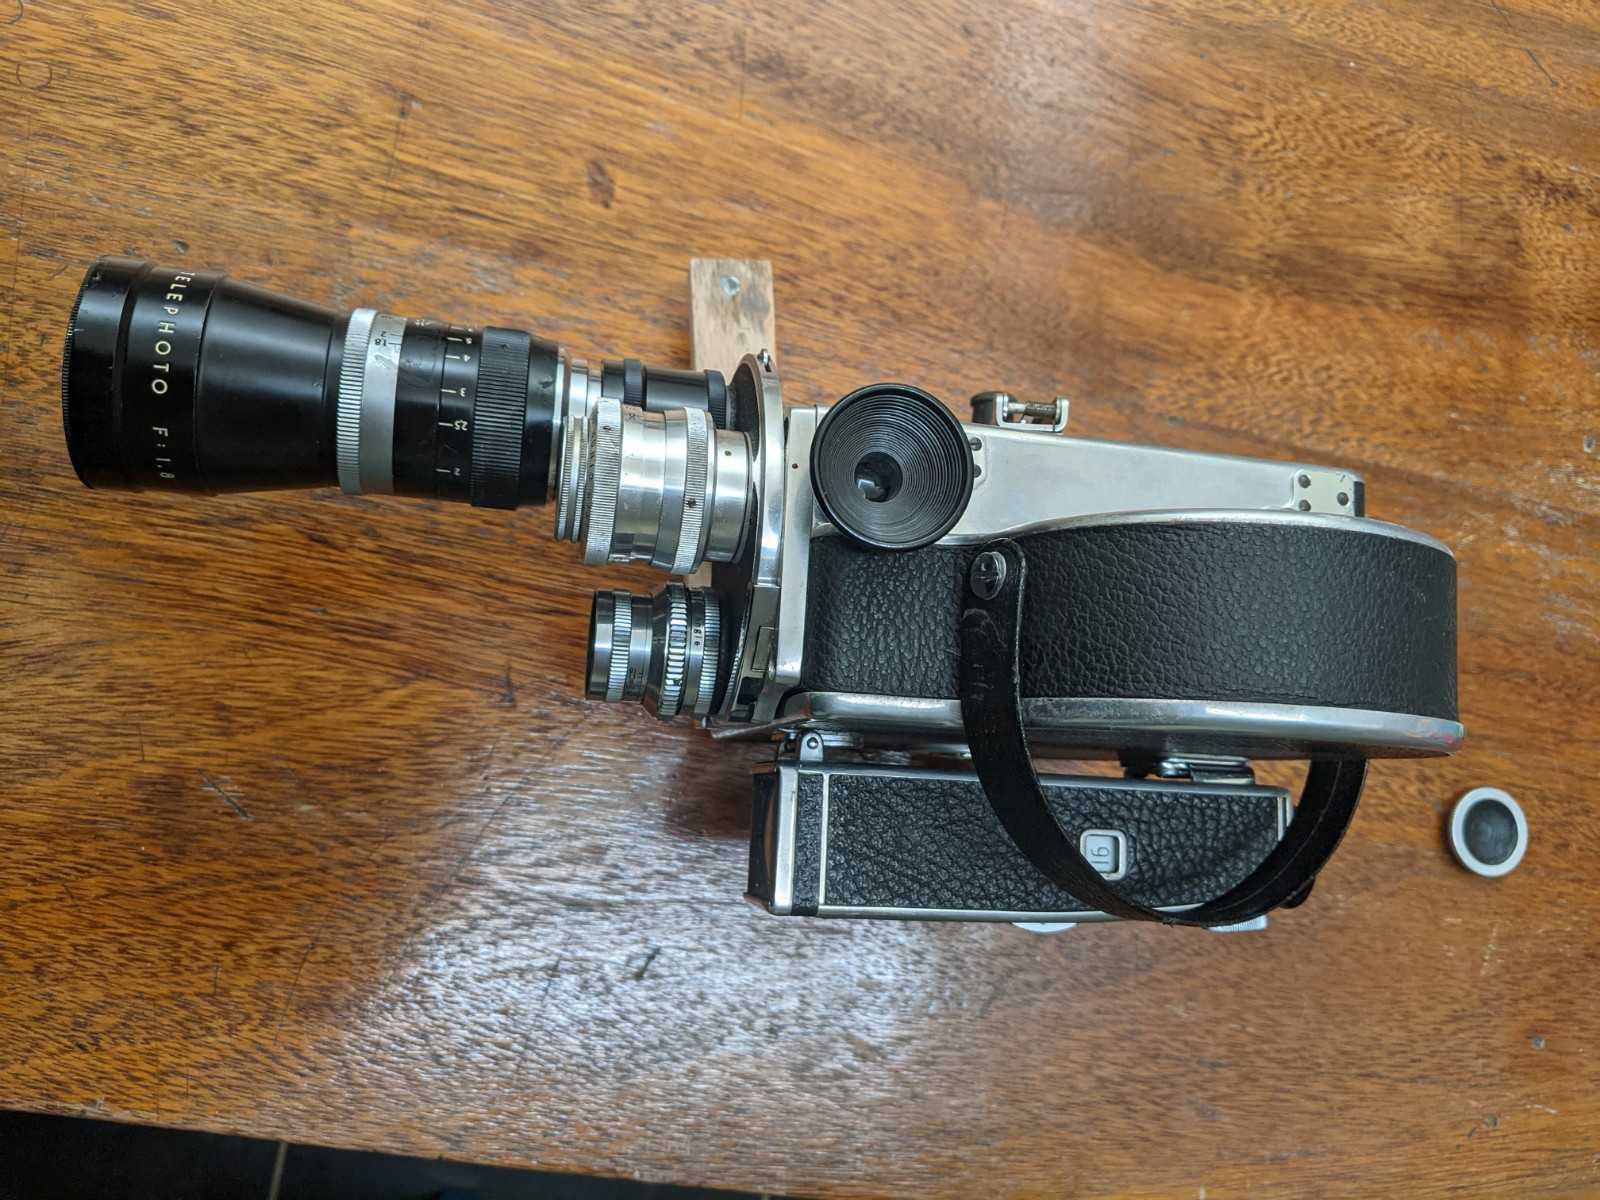 Bolex 16 mm filmcamera